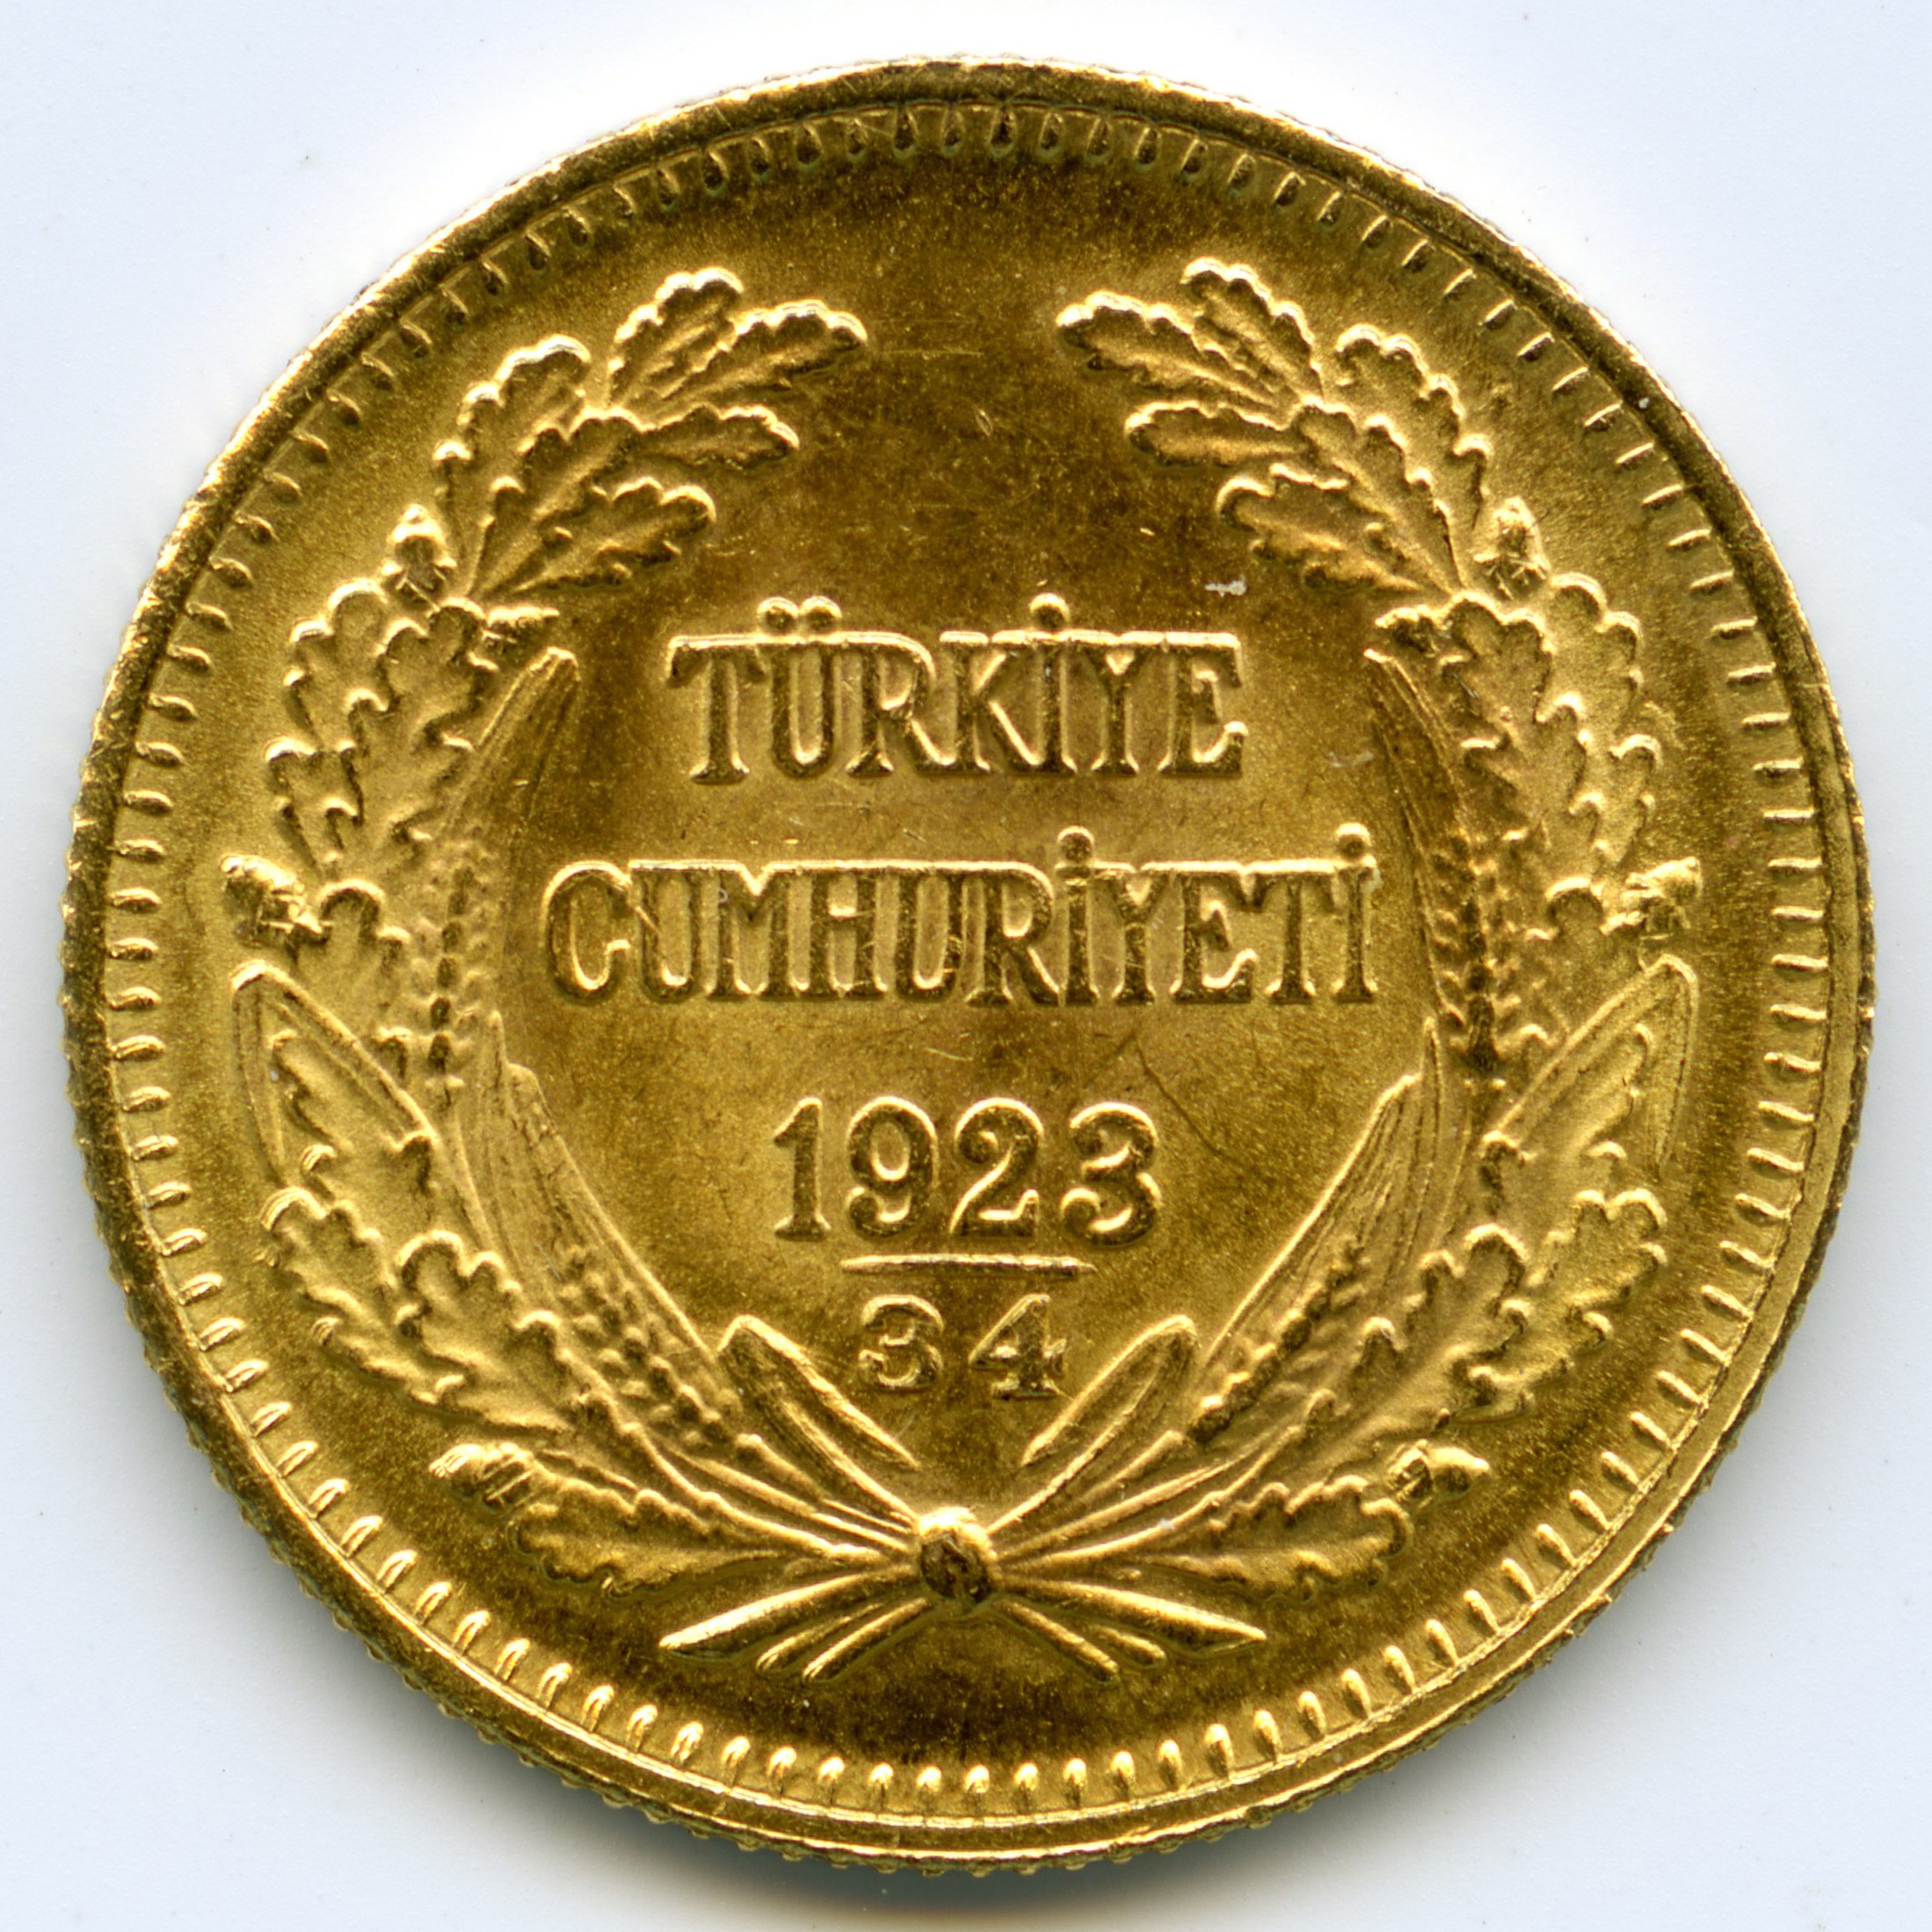 Turquie - 100 Kurush - 1957 revers